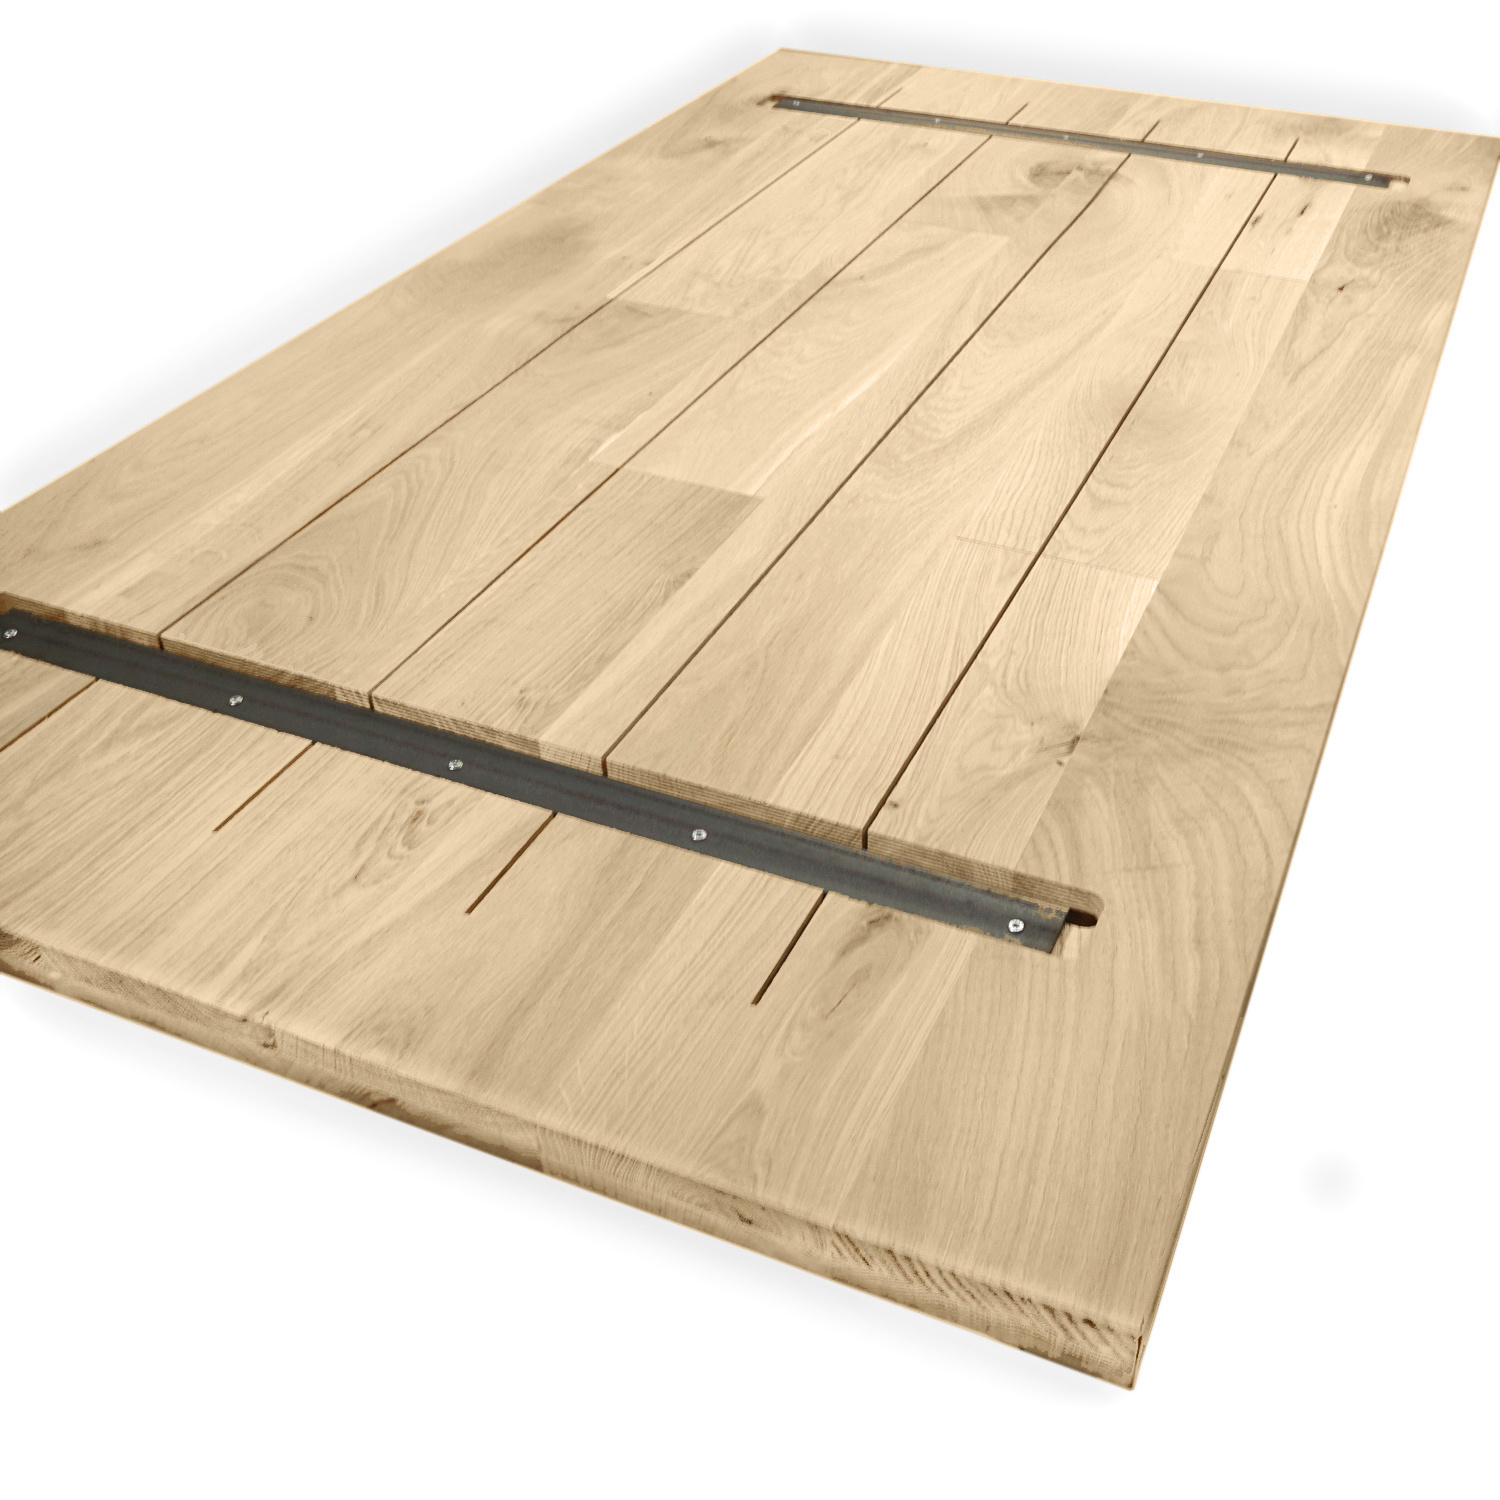  Tischplatte Eiche nach Maß - 2 cm dick - Eichenholz rustikal - Eiche Tischplatte massiv - verleimt & künstlich getrocknet (HF 8-12%) - 50-120x50-350 cm